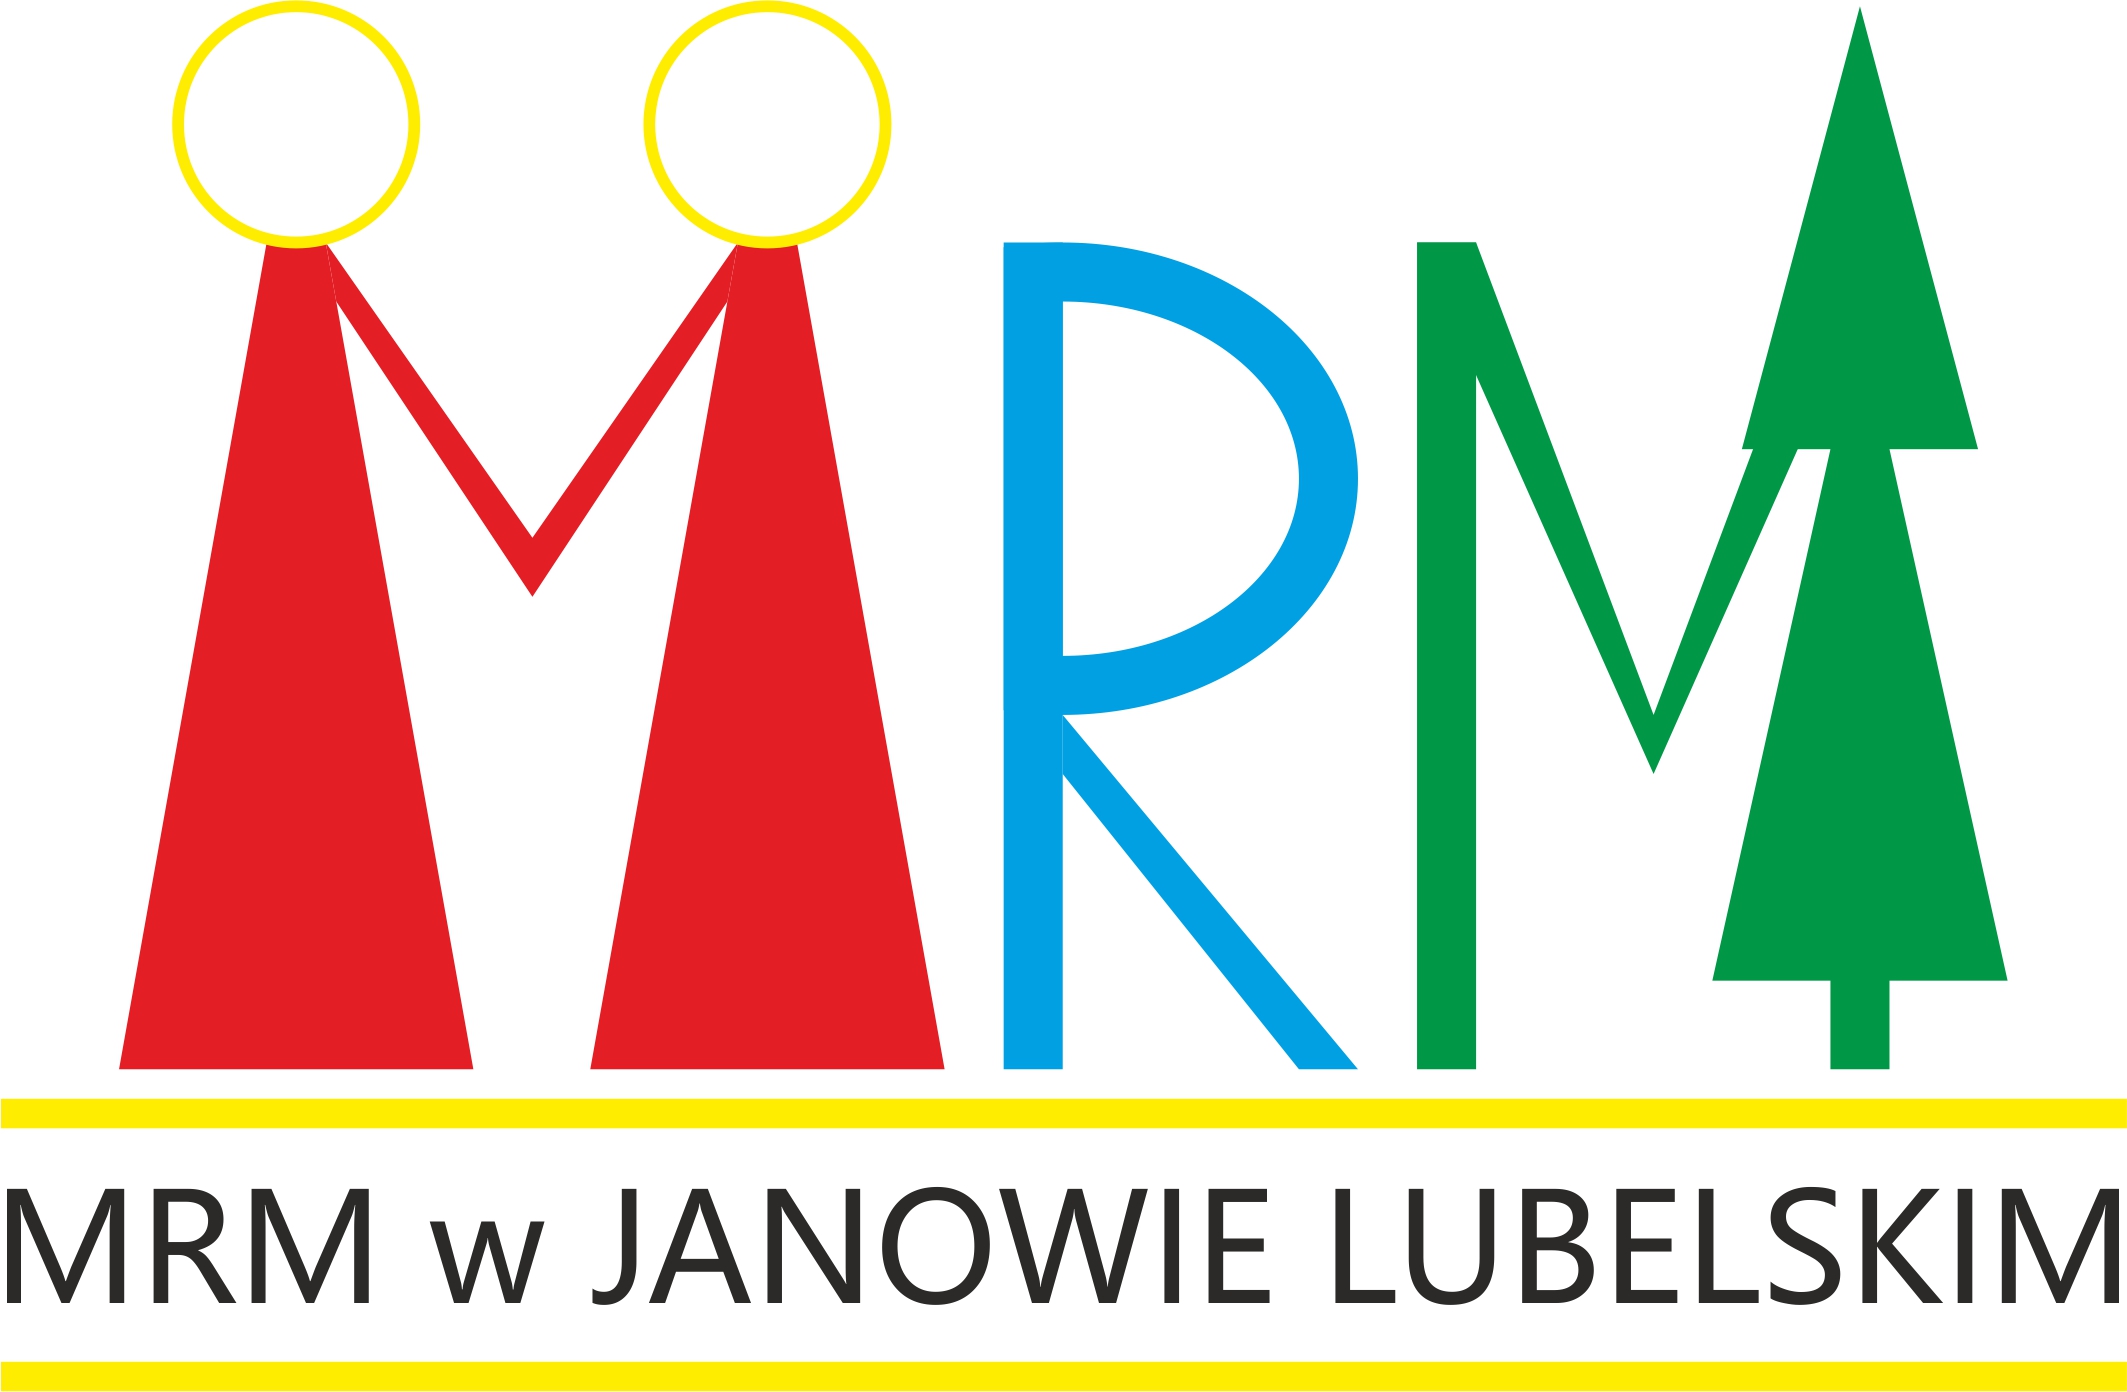 Logotyp Młodzieżowej Rady Miejskiej, stylizowane na grafikę litery M (dwie osoby trzymające się za ręcę; R i M (której prawa część to zielone drzewo iglaste); pod tym napis: MRM W JANOWIE LUBELSKIM.